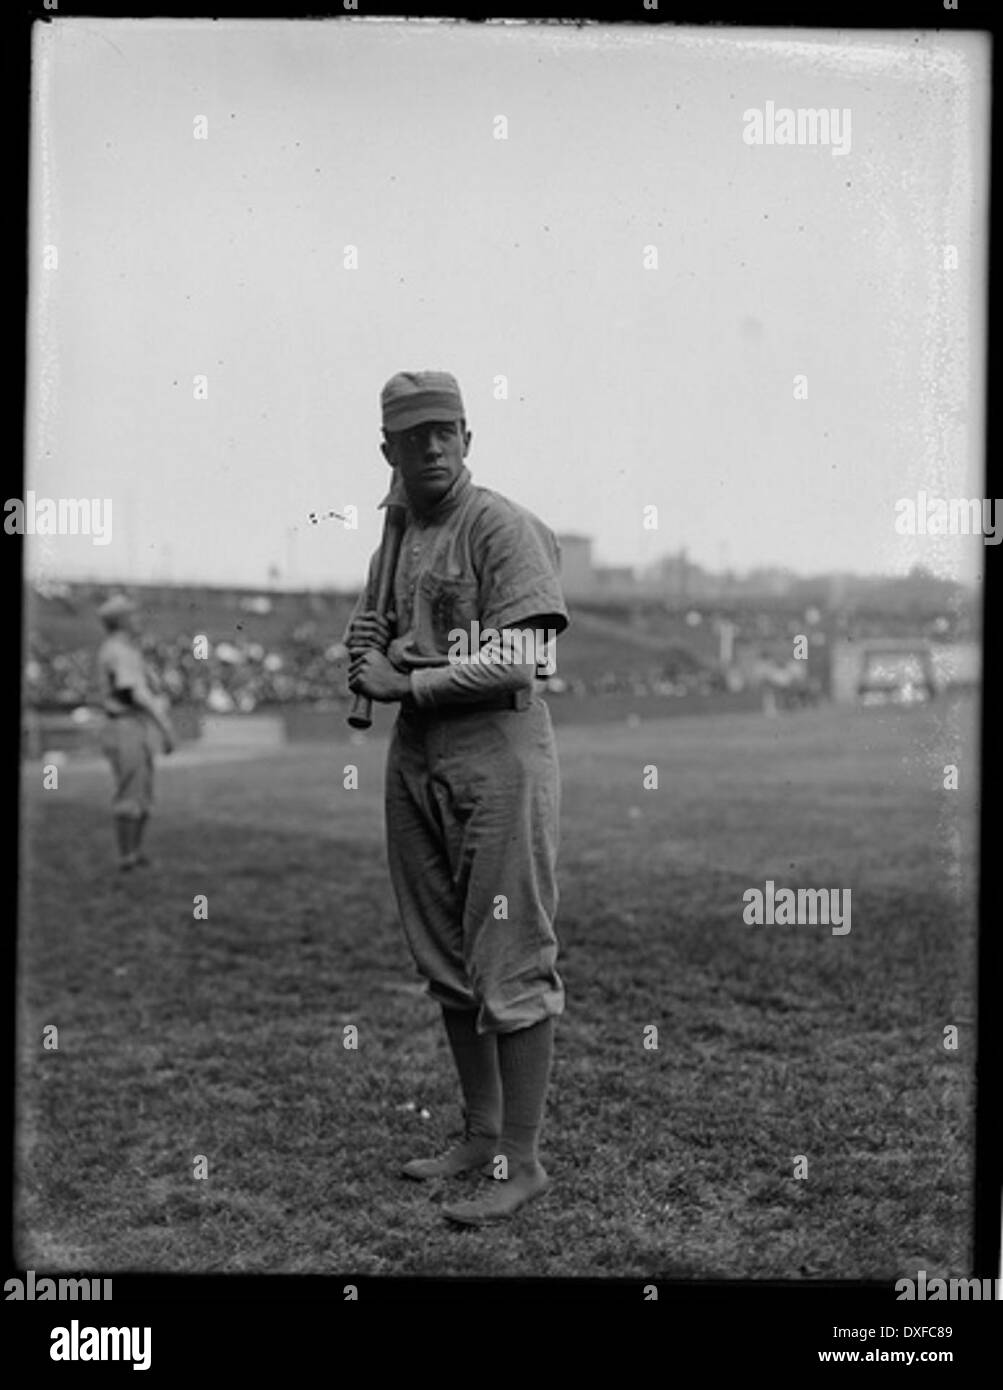 Retrato de Joe Tinker, jugador de béisbol Foto de stock